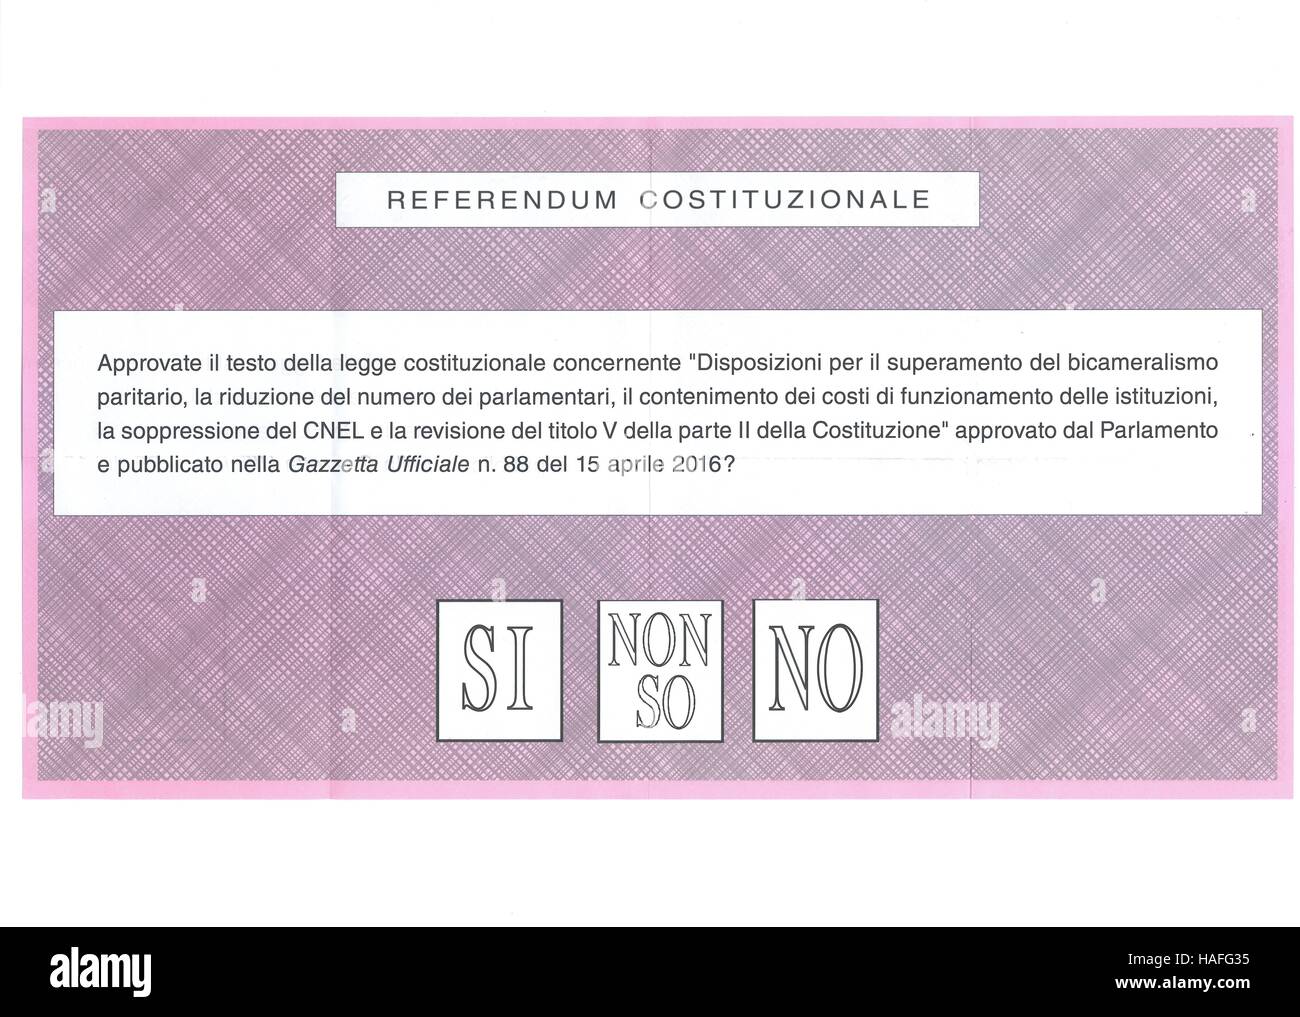 Sì NO NON SO scrutinio per il referendum italiano Foto Stock